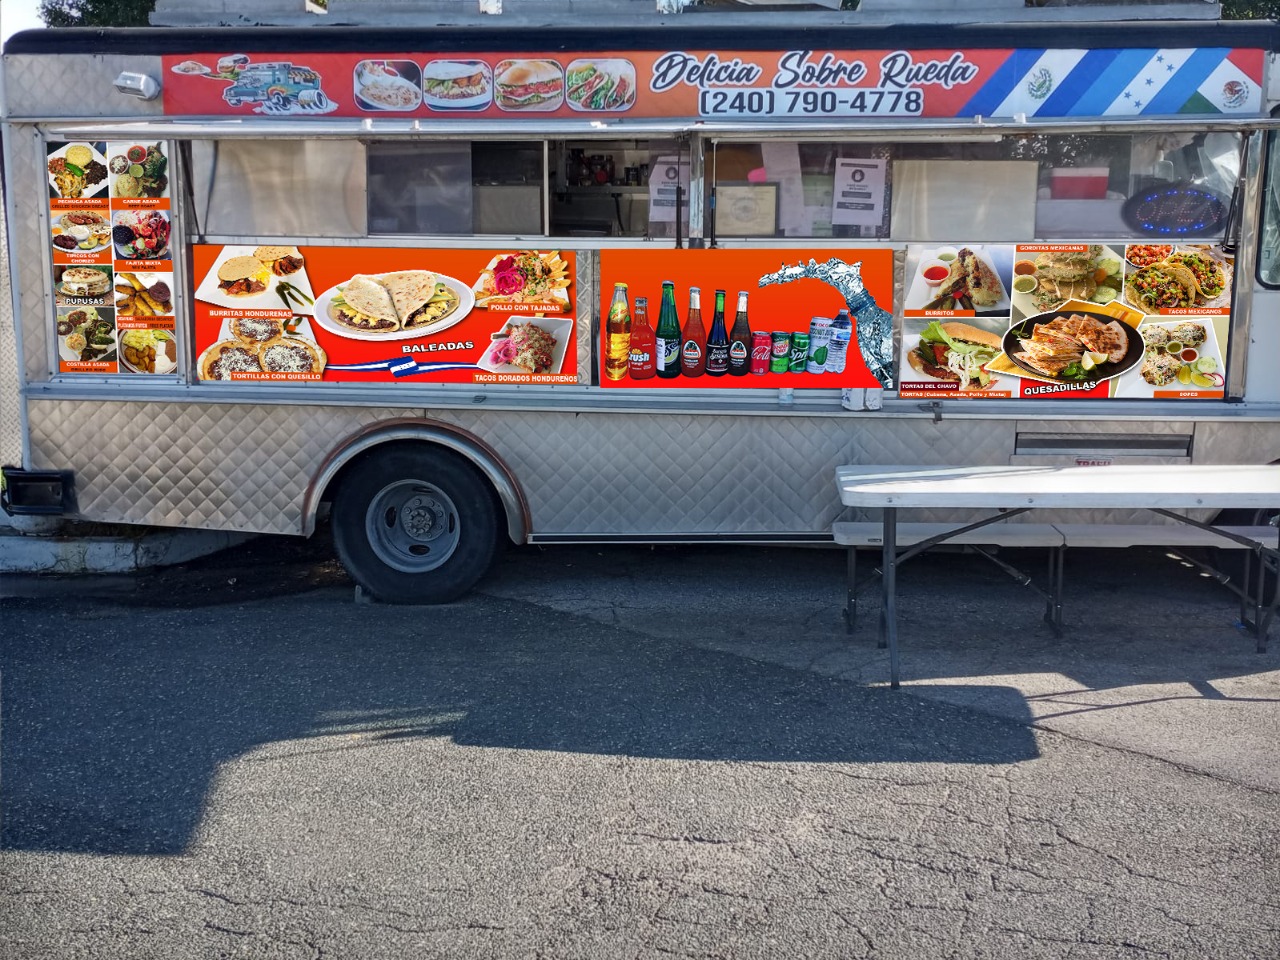 Delicias Sobre Ruedas - Food Truck